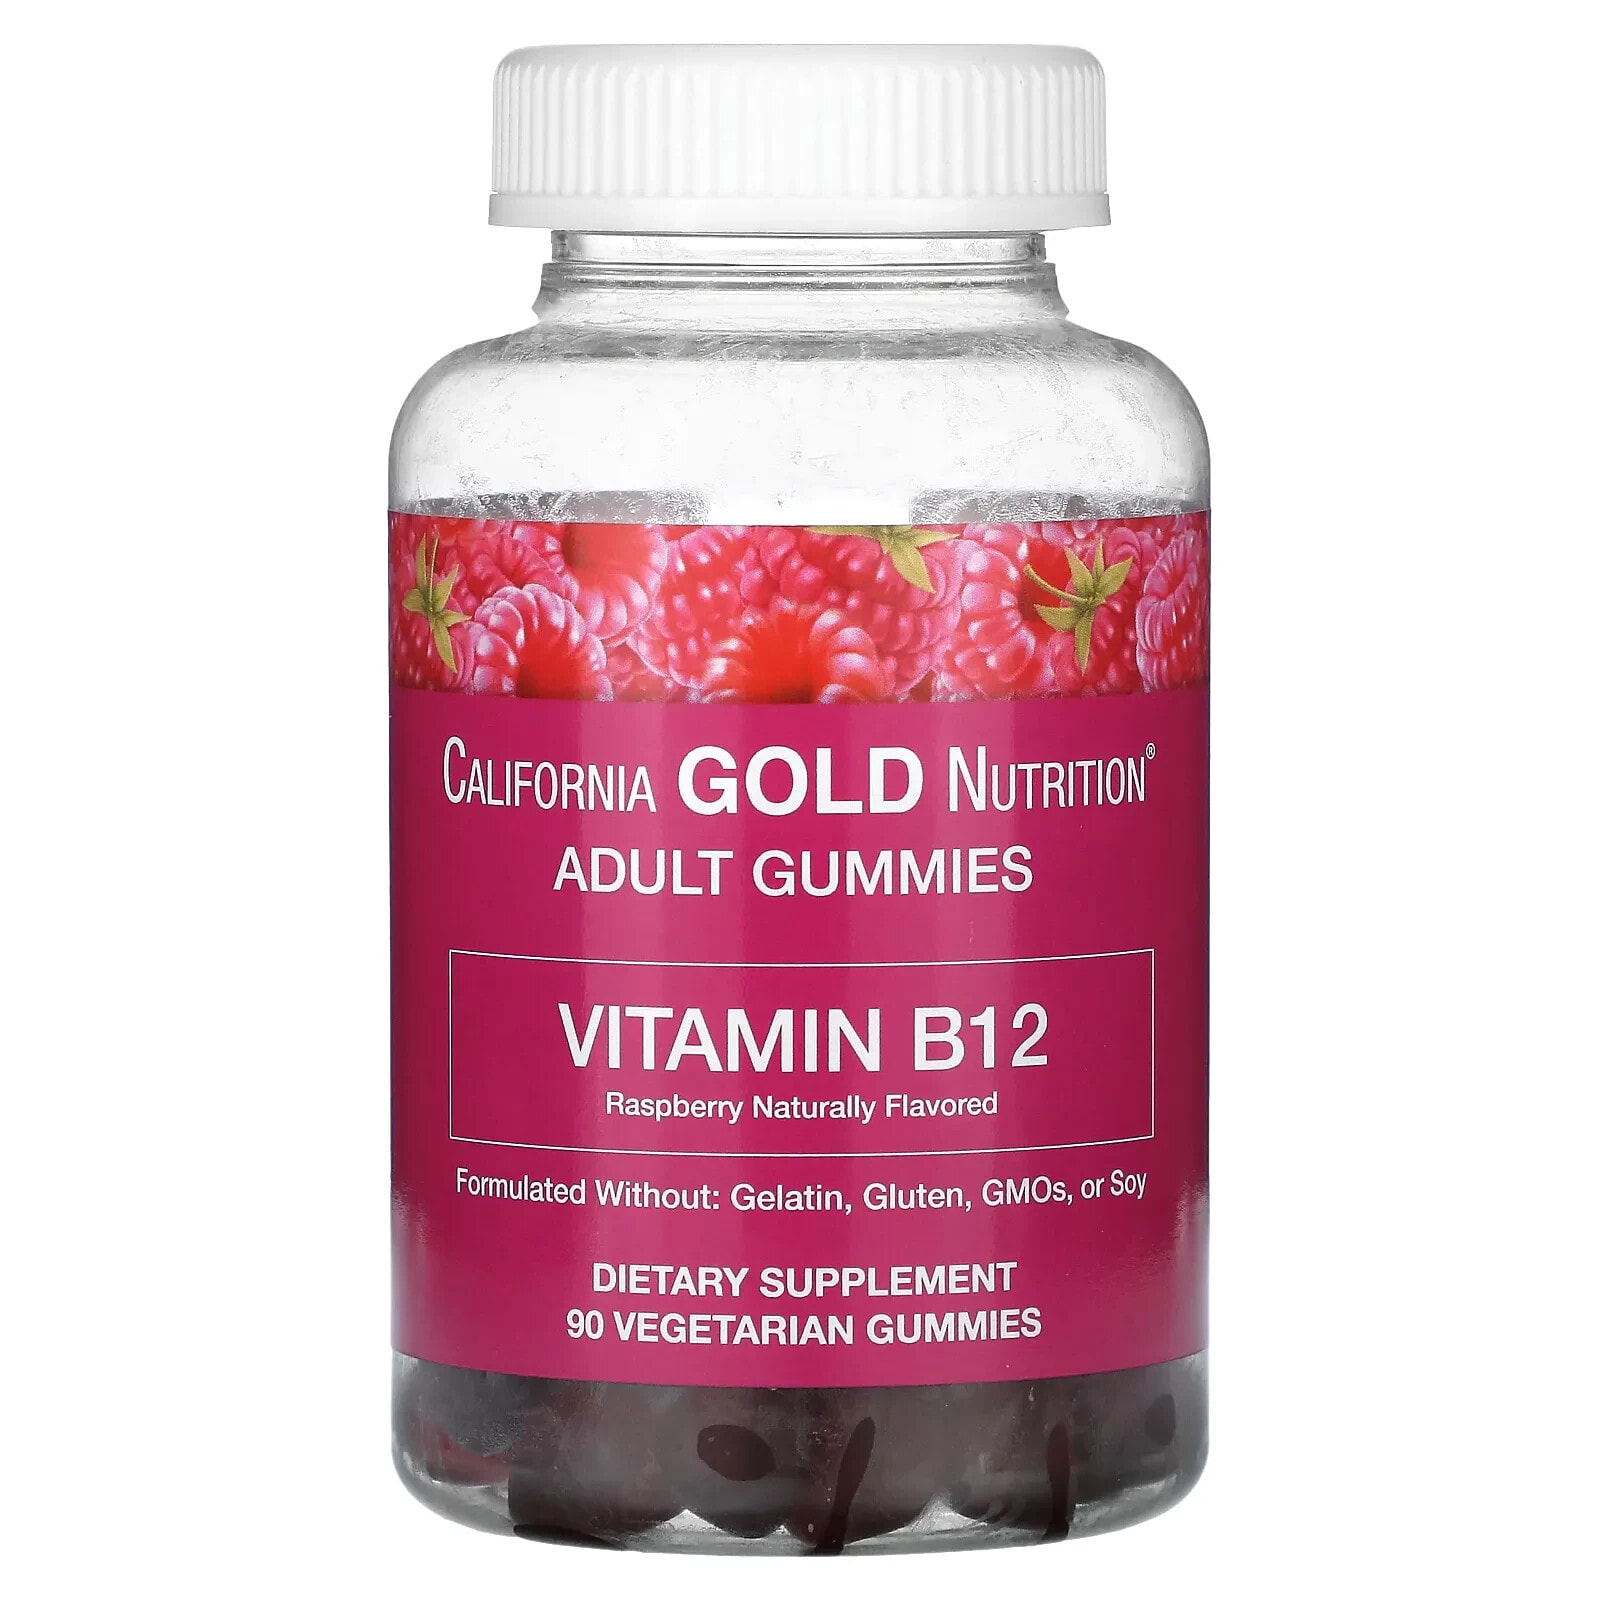 Vitamin B12 Gummies, Natural Raspberry Flavor, Gelatin Free, 3,000 mcg, 90 Gummies (1500 mcg per Gummy)